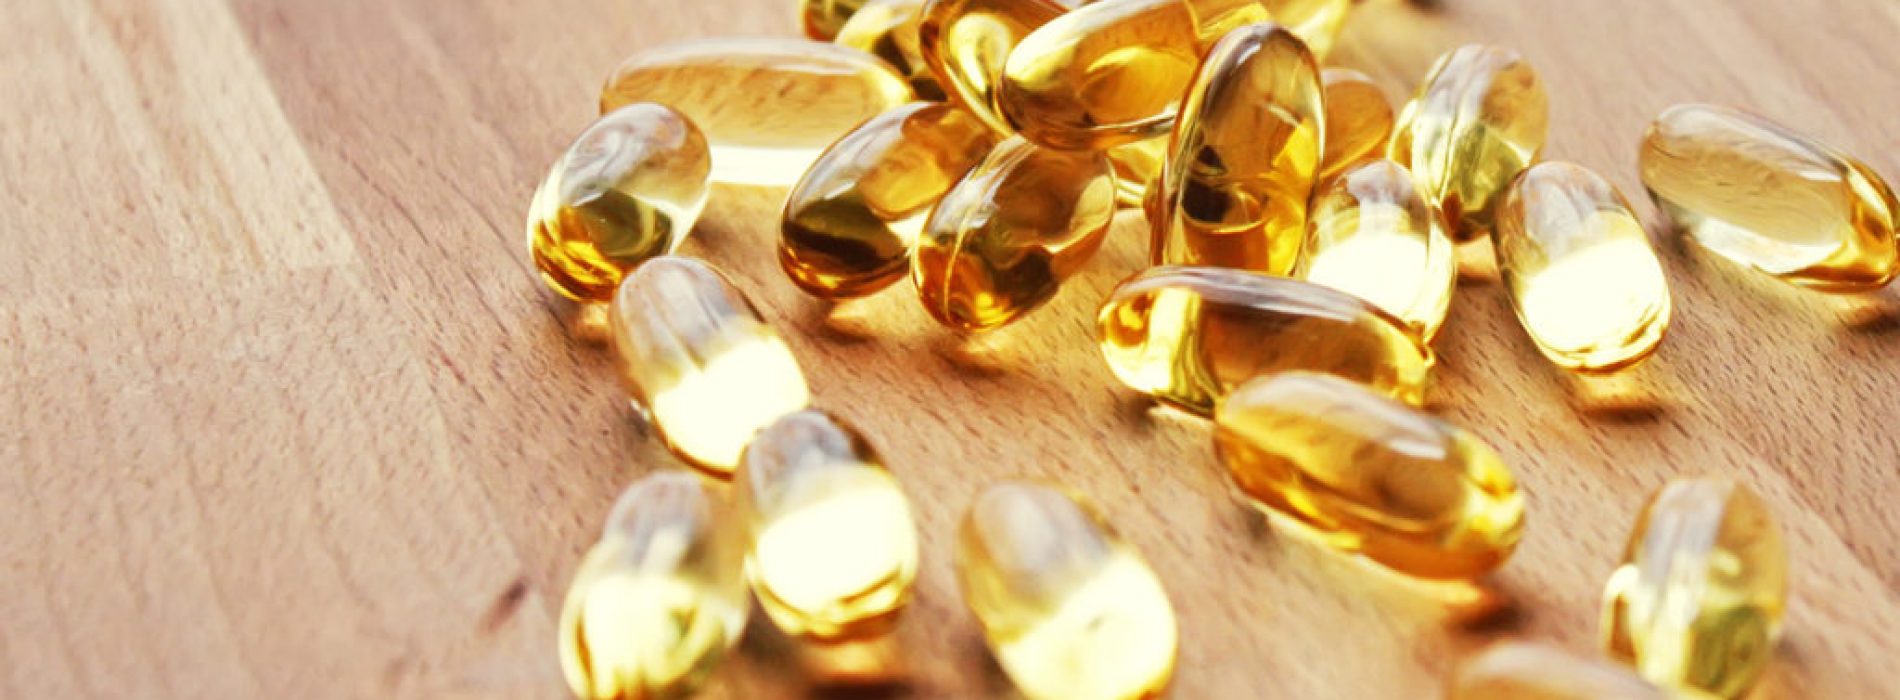 Het aanvullen met vitamine D kan de groei van darmkanker voorkomen